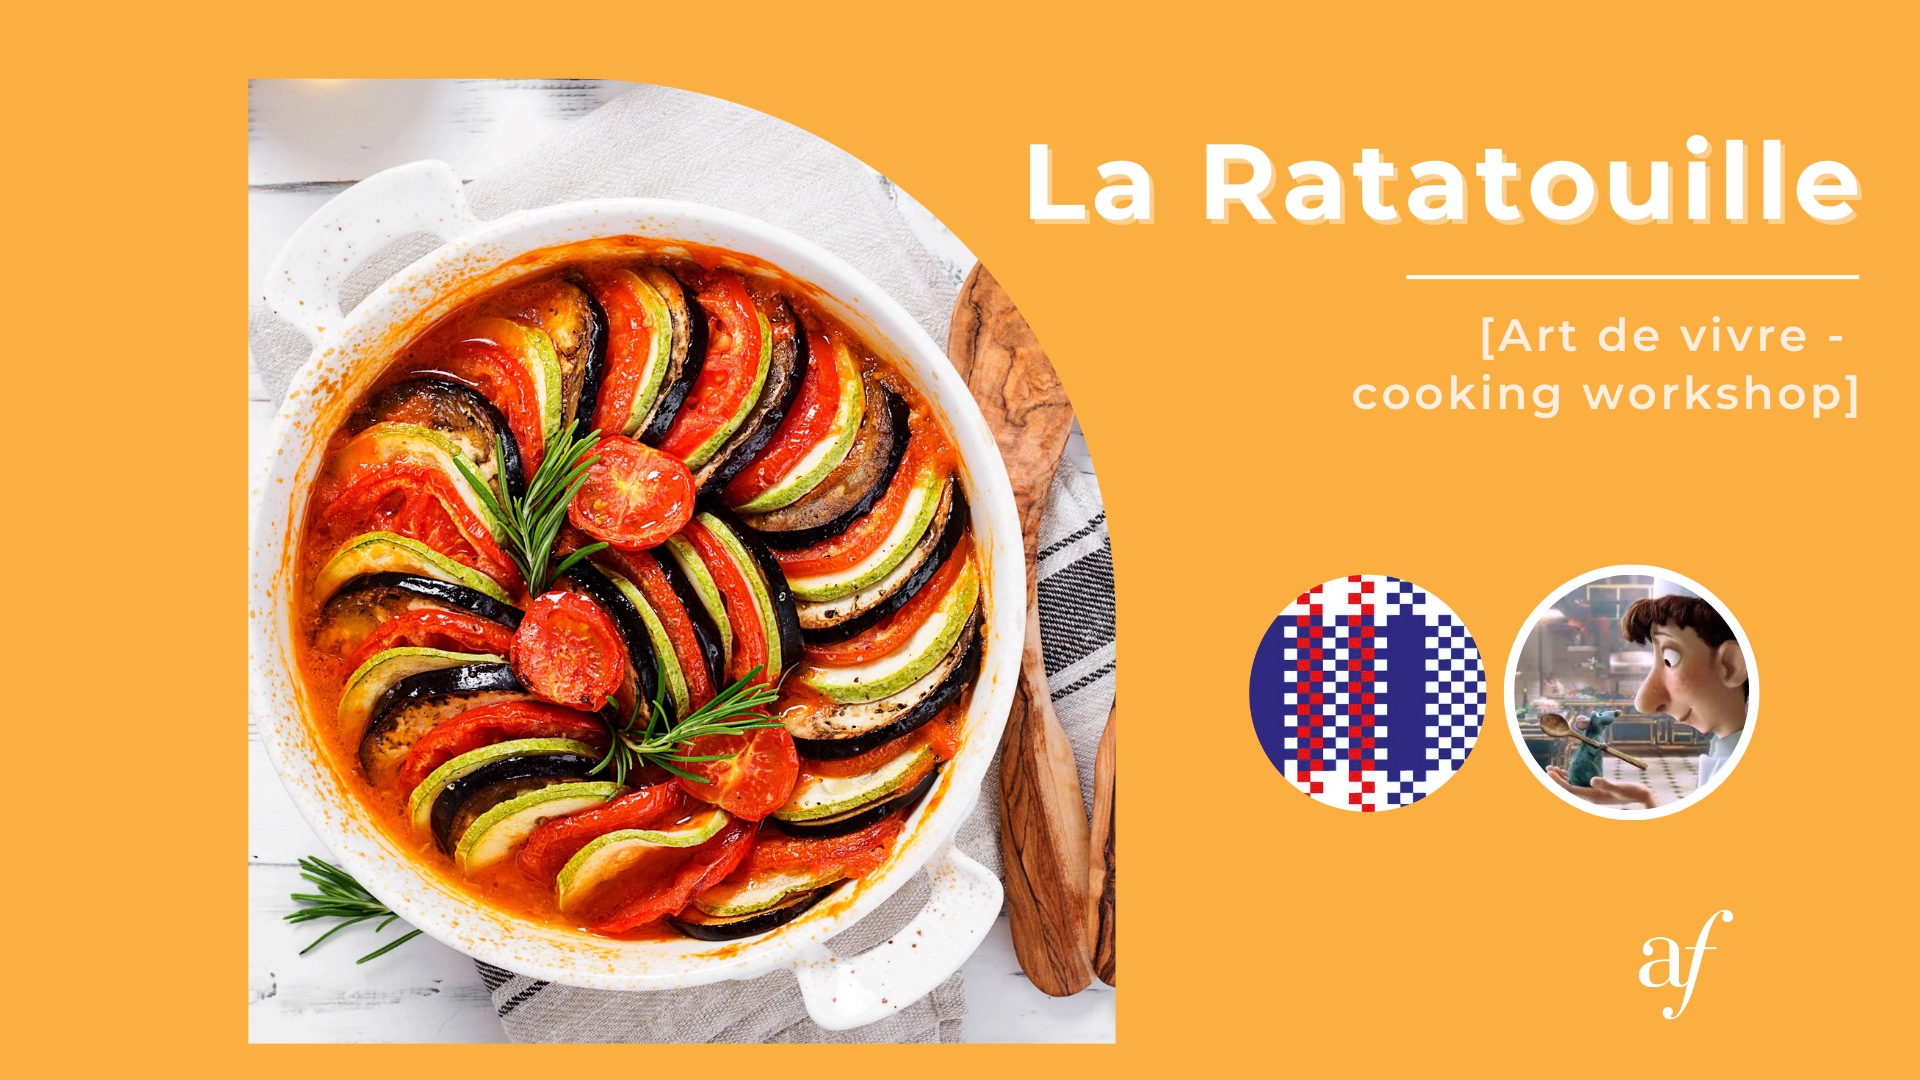 Cooking workshop : La Ratatouille